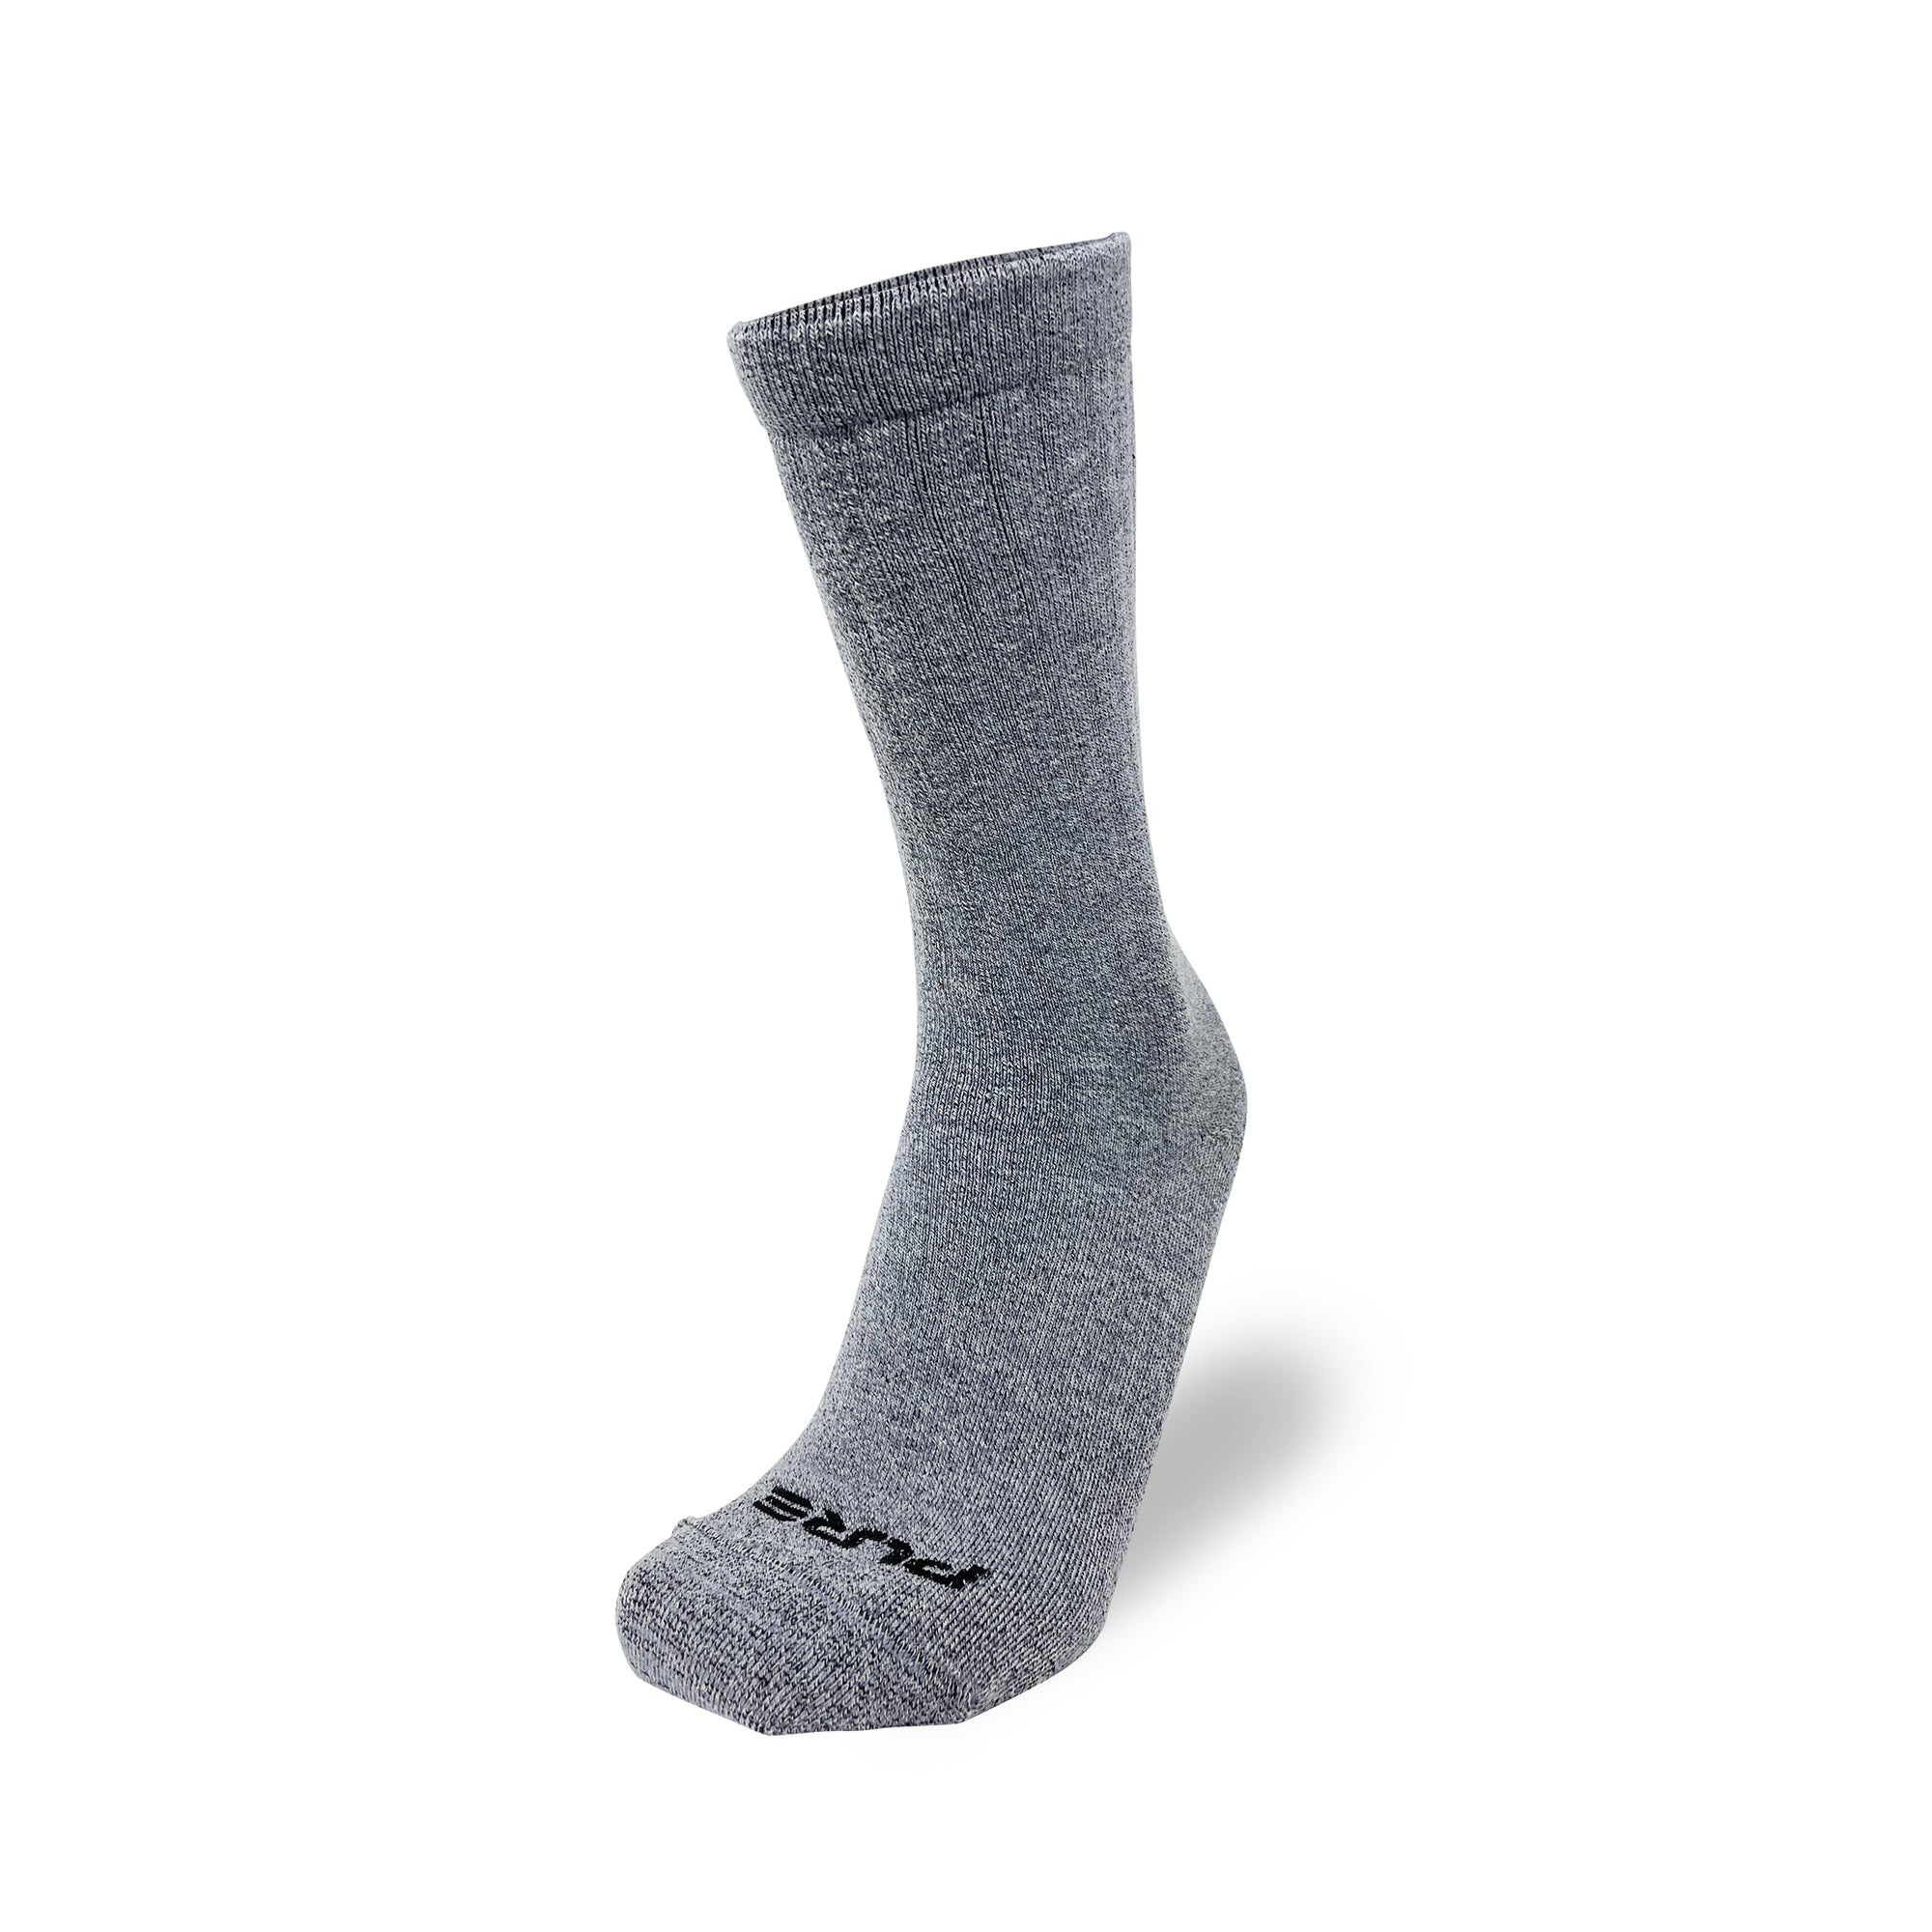 Merino Wool Hiking Boot Socks